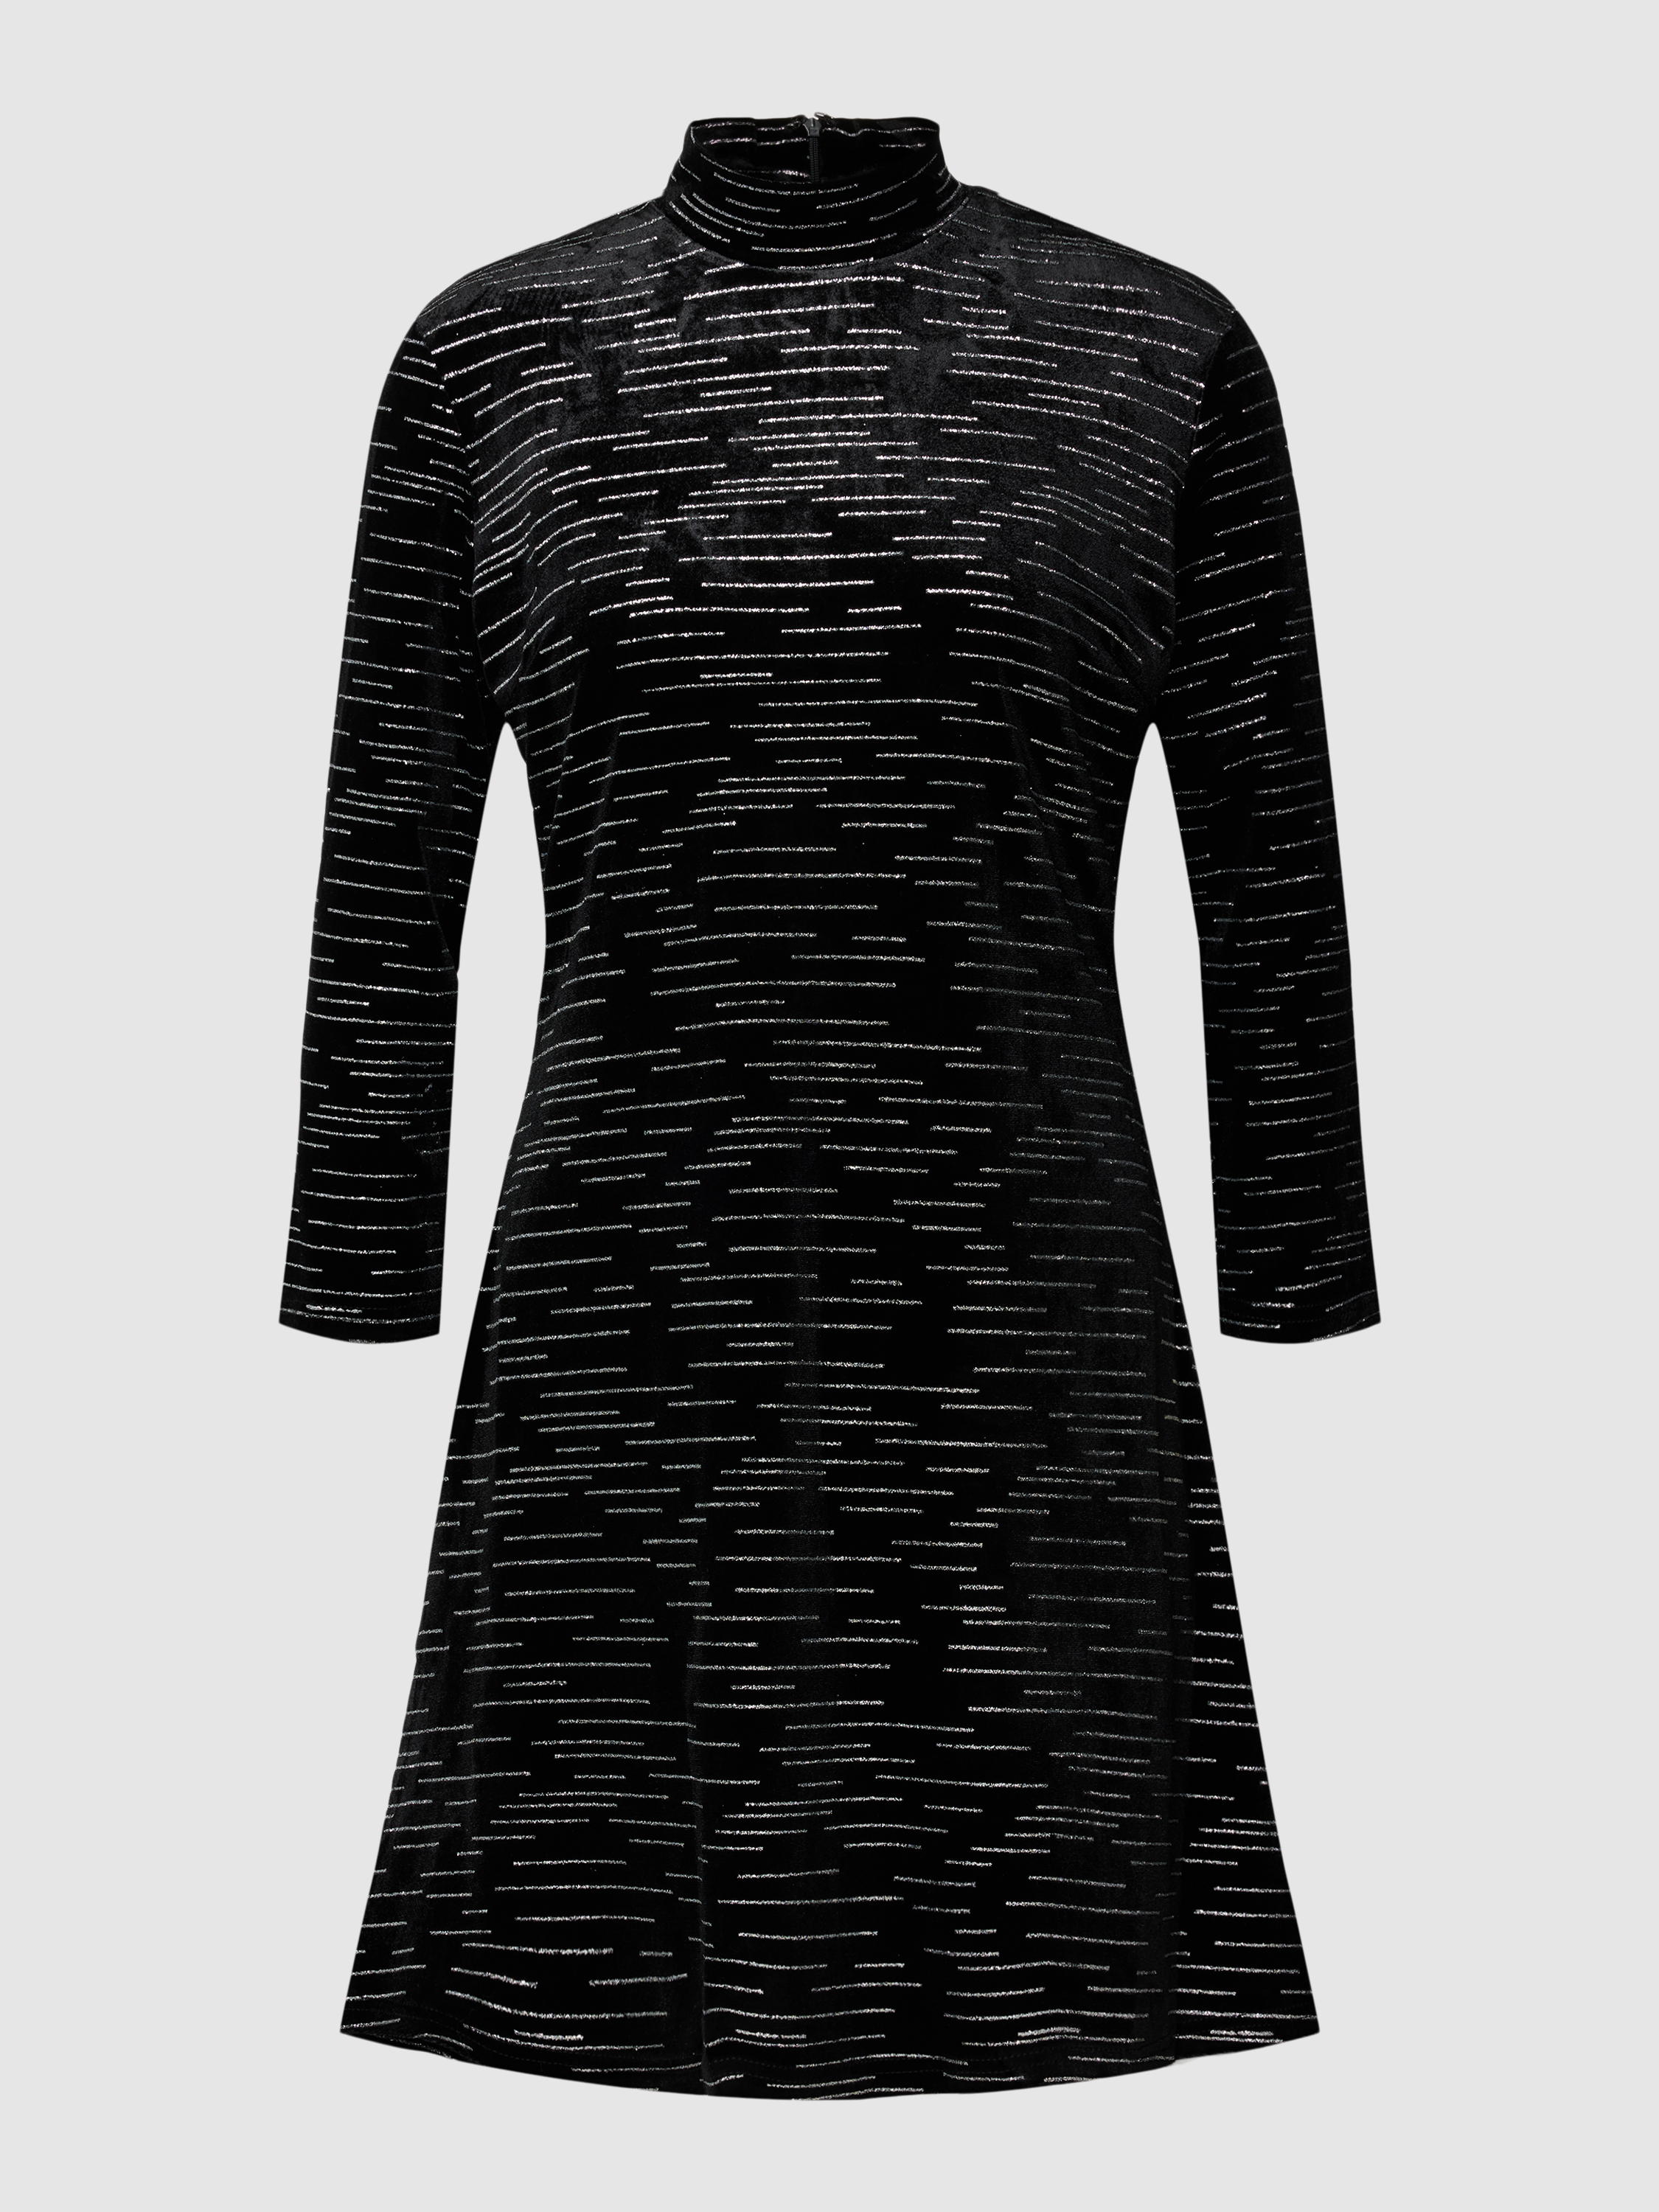 Платье женское Apricot 1778154 черное M (доставка из-за рубежа)